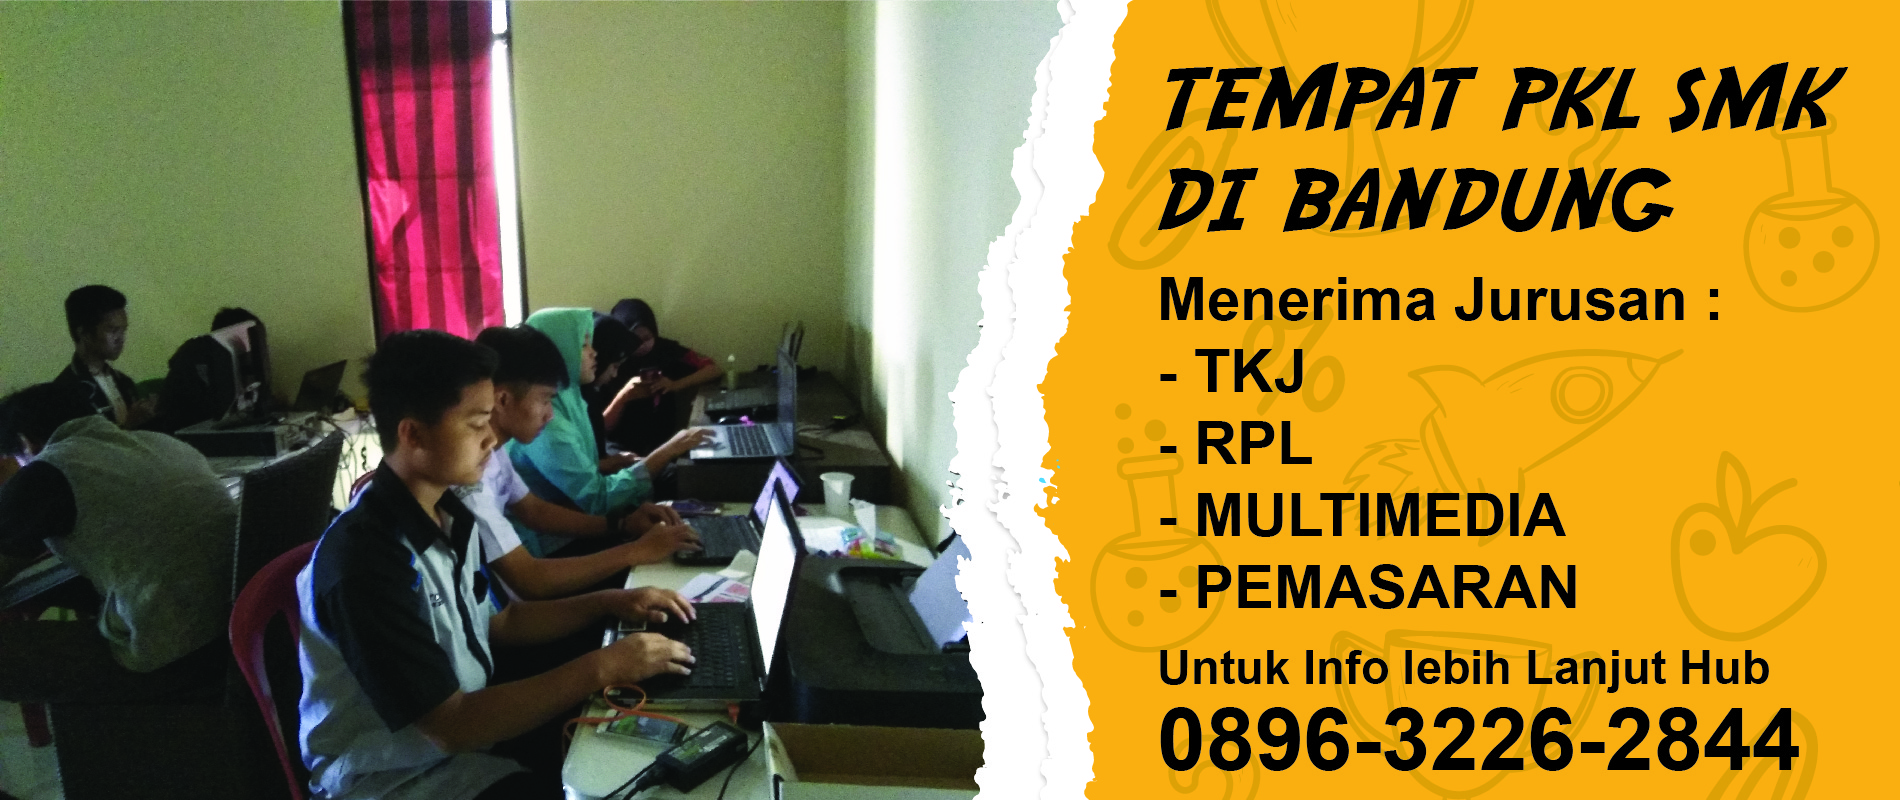 Tempat Prakerin Bandung - 0896-3226-2844